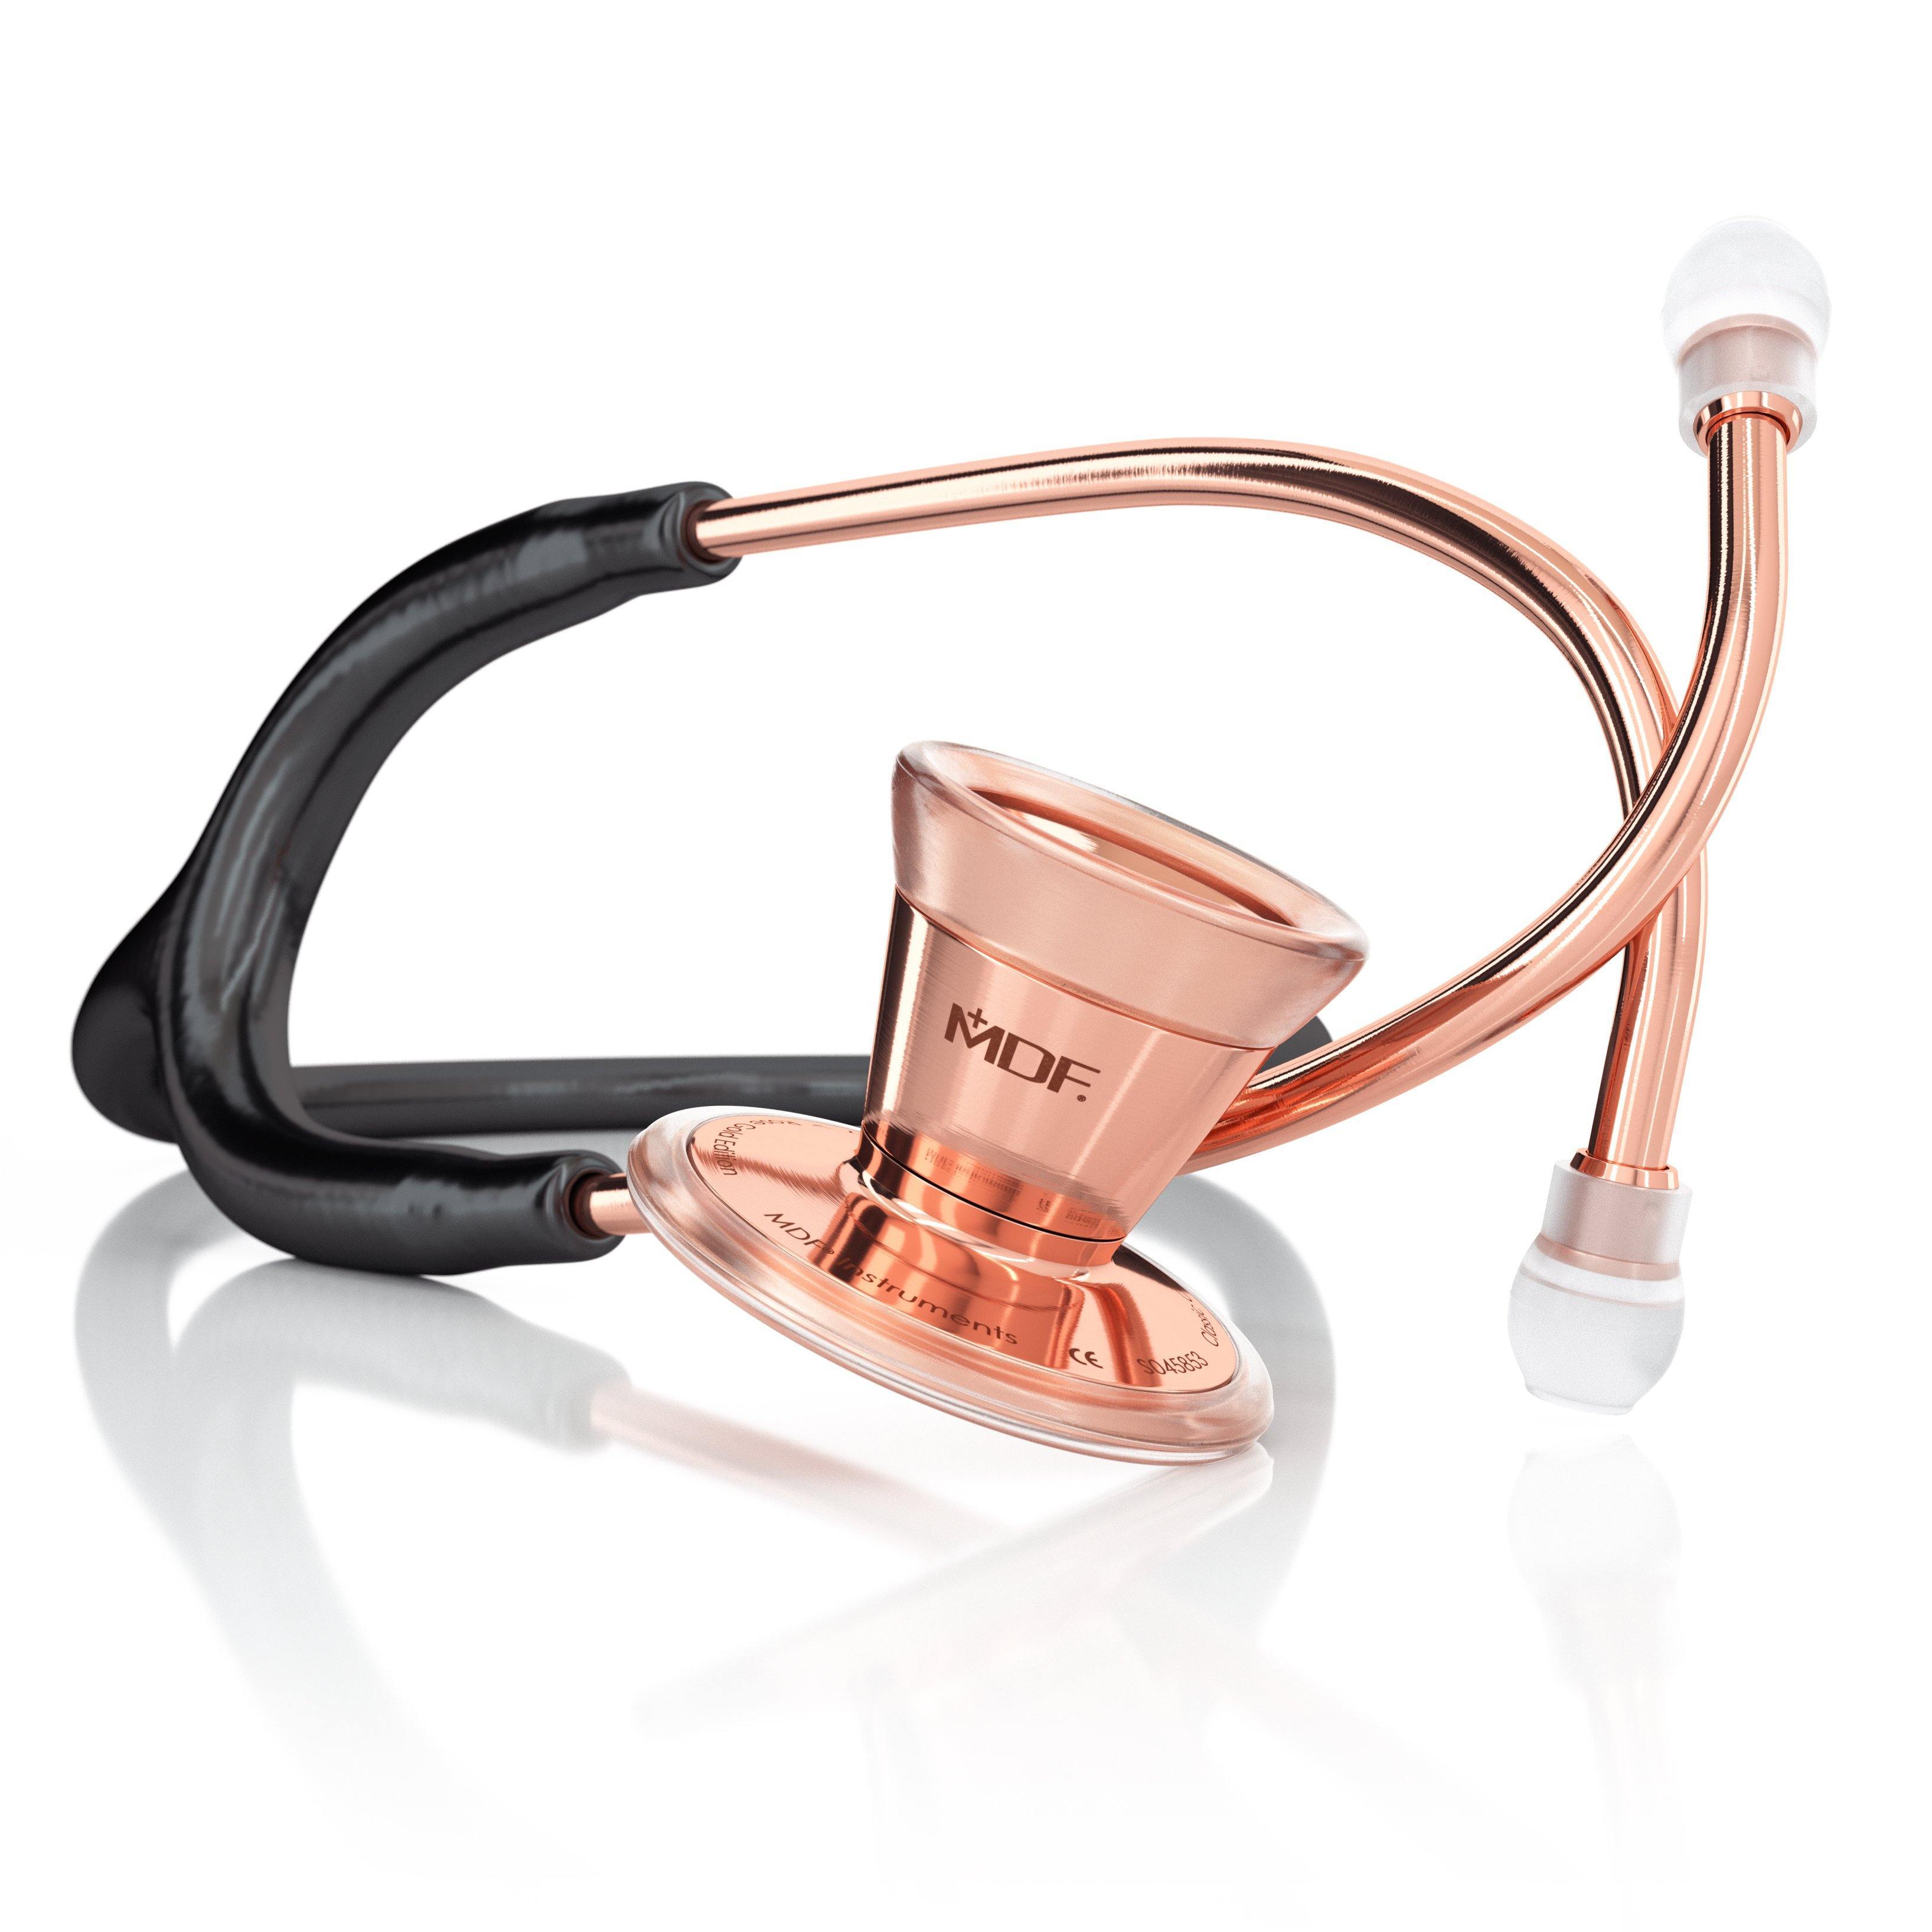 ProCardial® Adult Stethoscope - Black/Rose Gold - MDF Instruments UK